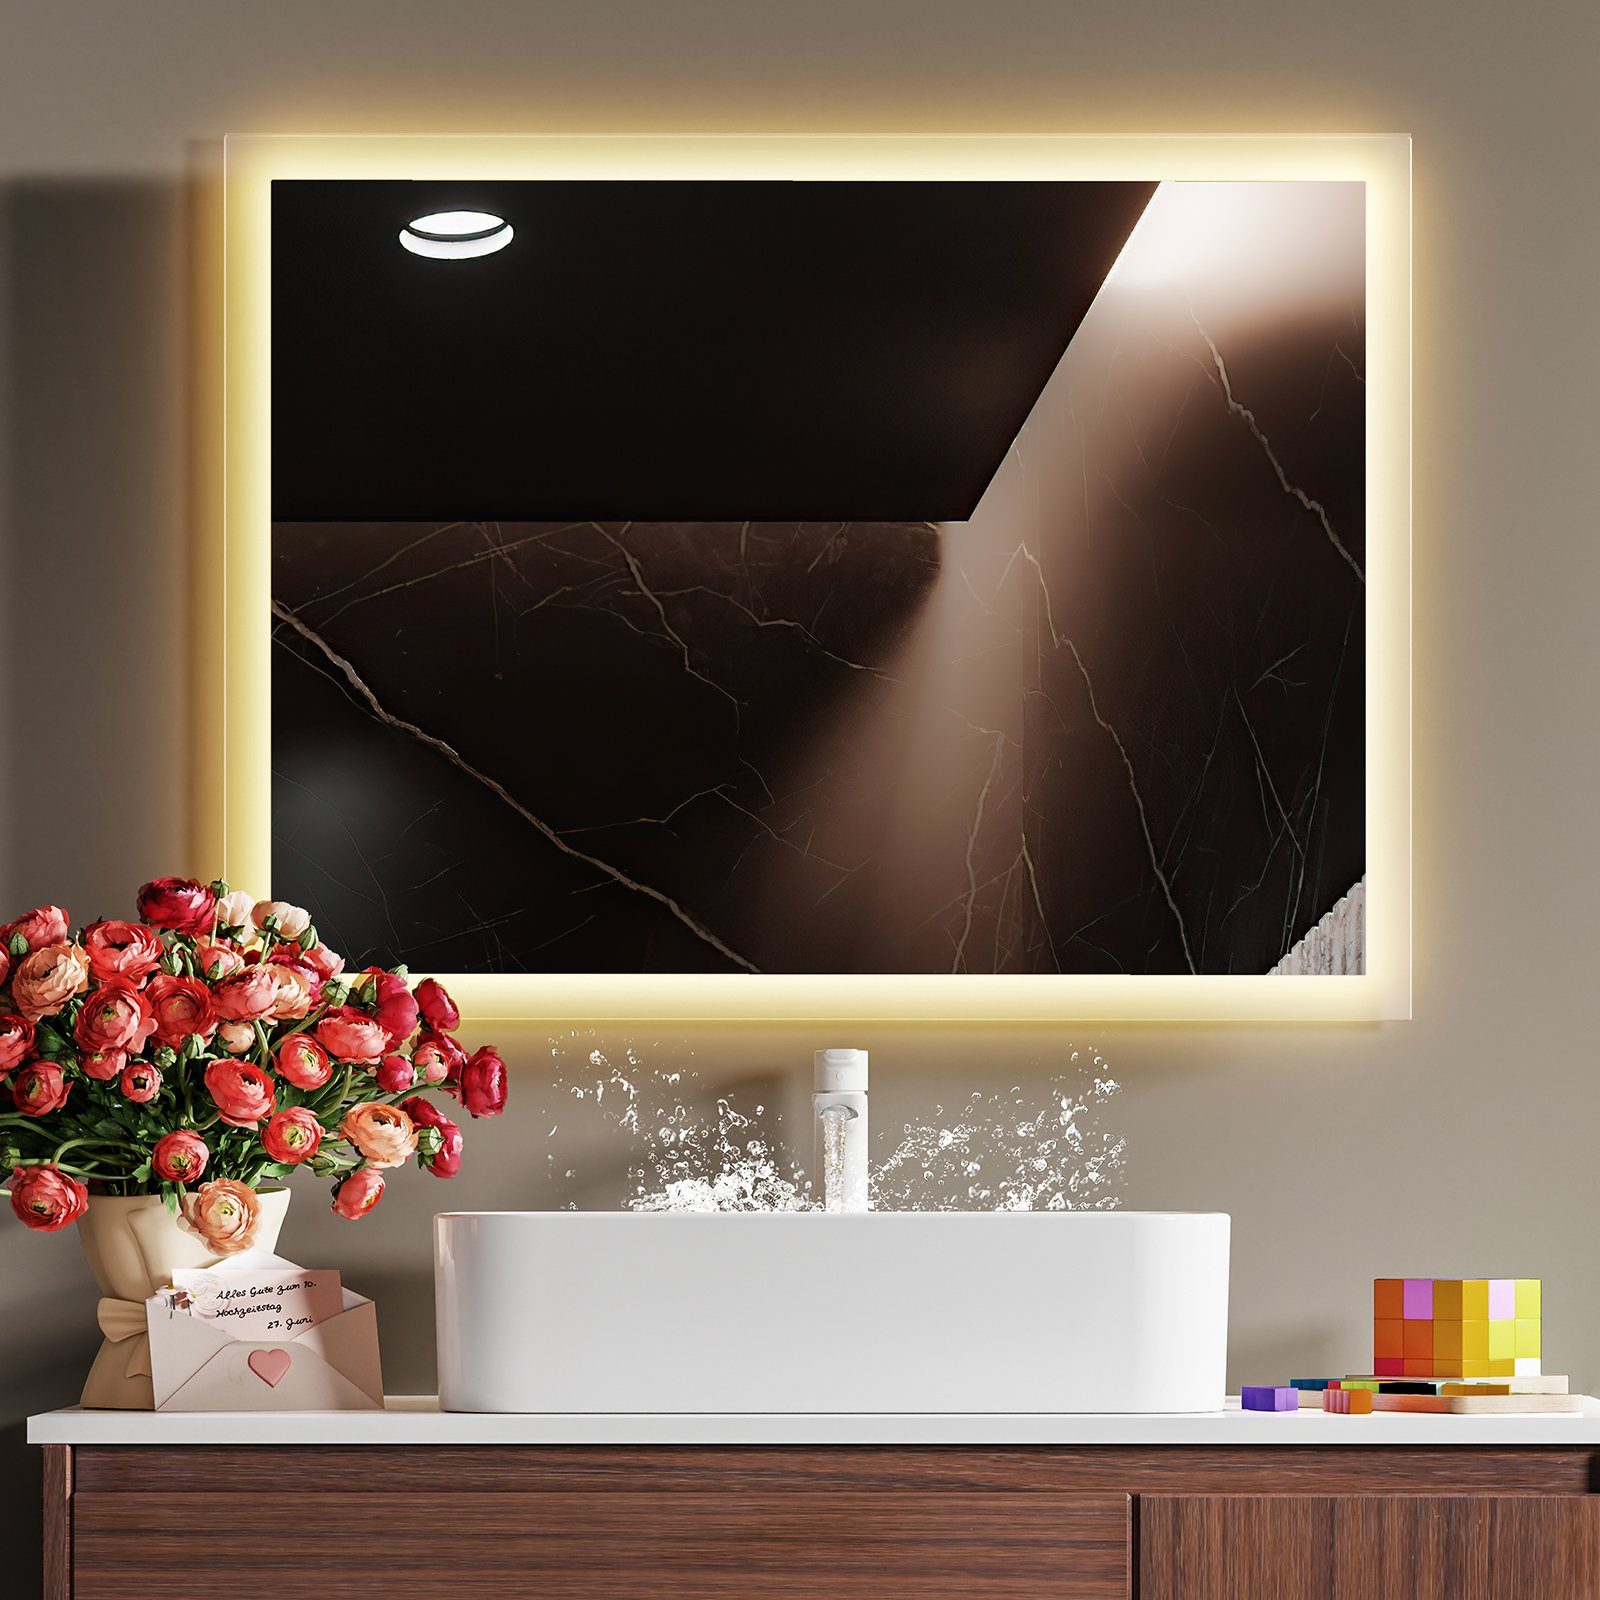 Wandspiegel 3000K Lichtspiegel IP44 Badspiegel 80x60cm Beleuchtung mit Vertikal/Horizontal Wandschalter, Warmweiß LED Energiesparend EMKE Montage